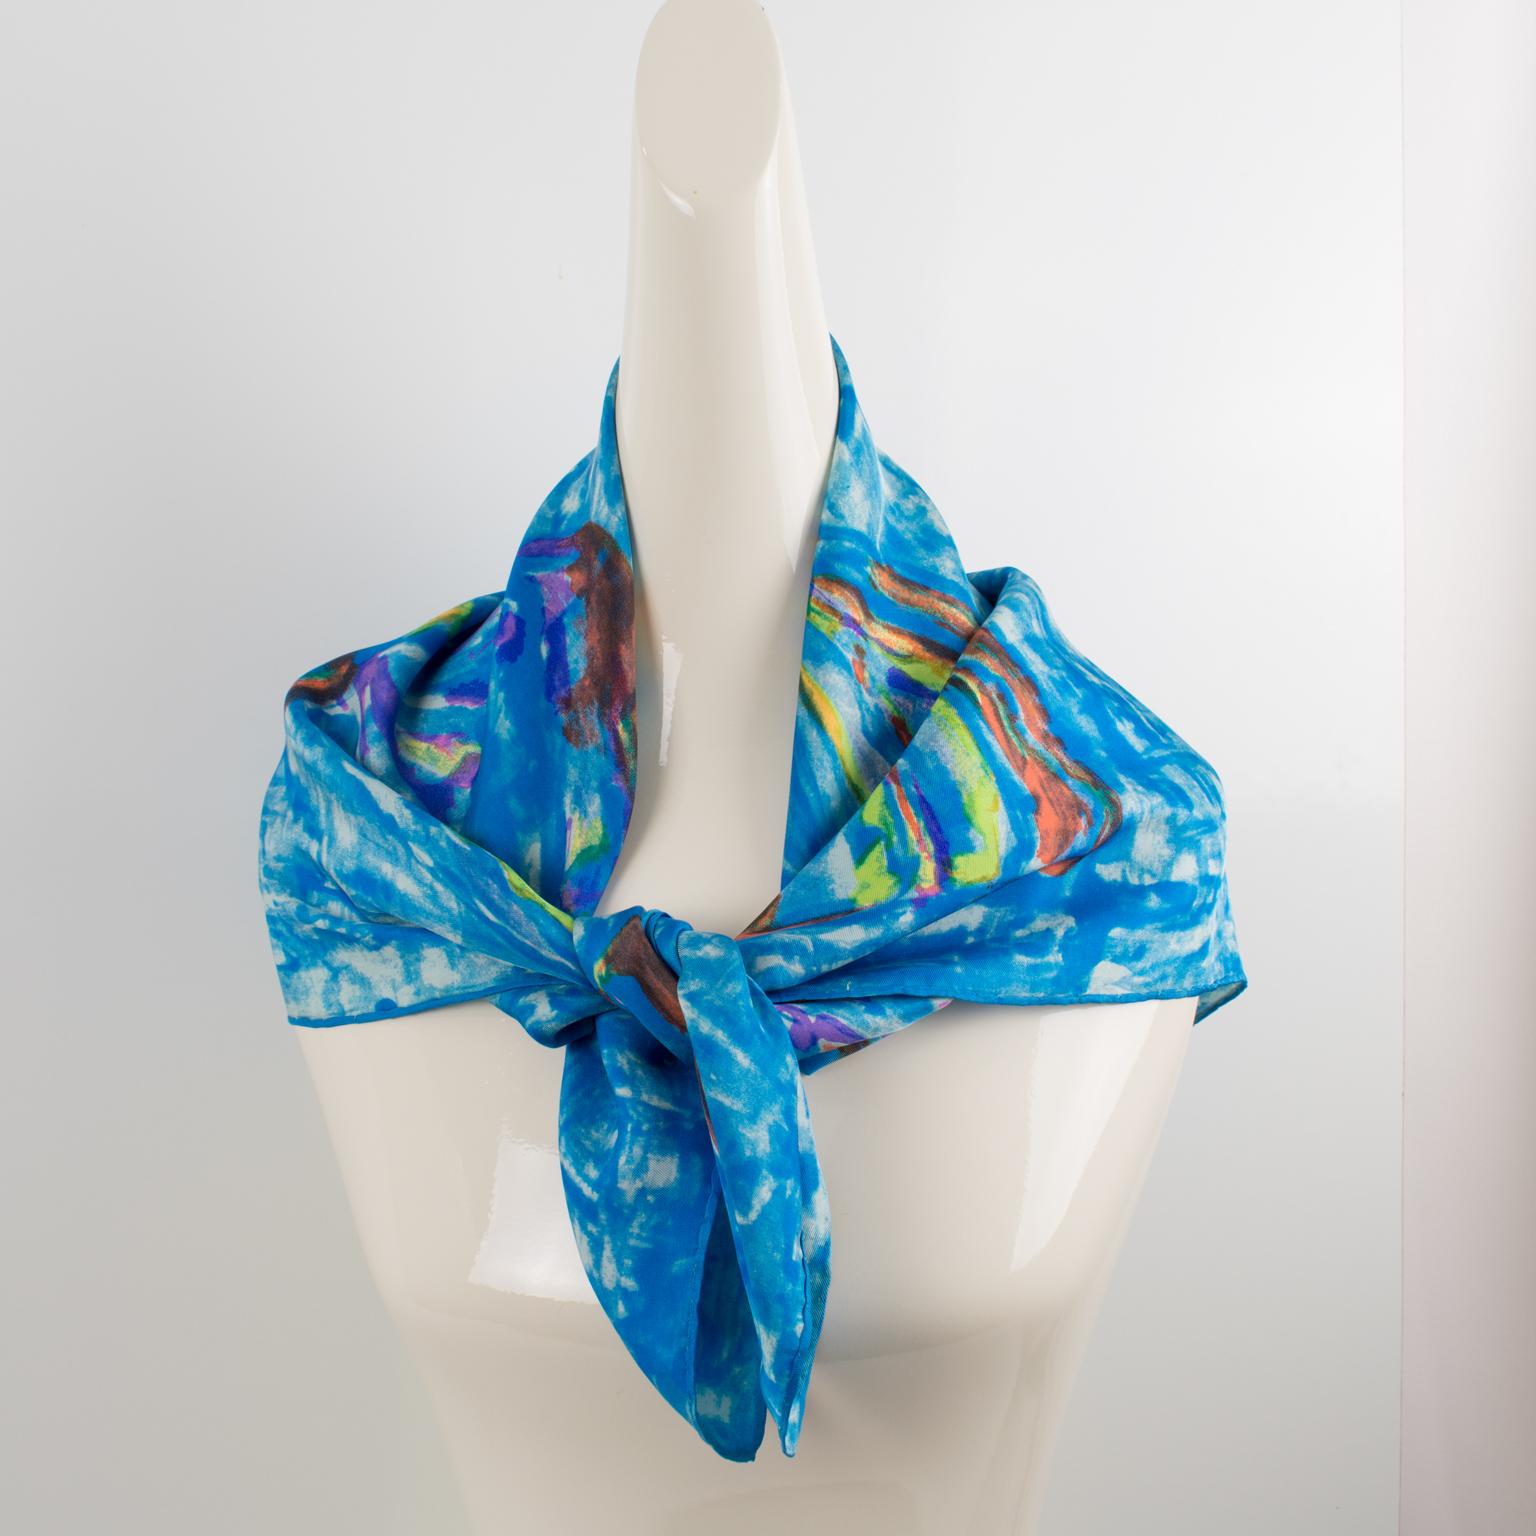 Ce magnifique foulard en soie de Leonard Paris, aux couleurs bleues et multicolores, présente un imprimé de papillons stylisés. La signature de la marque figure sur l'étiquette d'entretien. La combinaison des couleurs est vive et vibrante, avec du